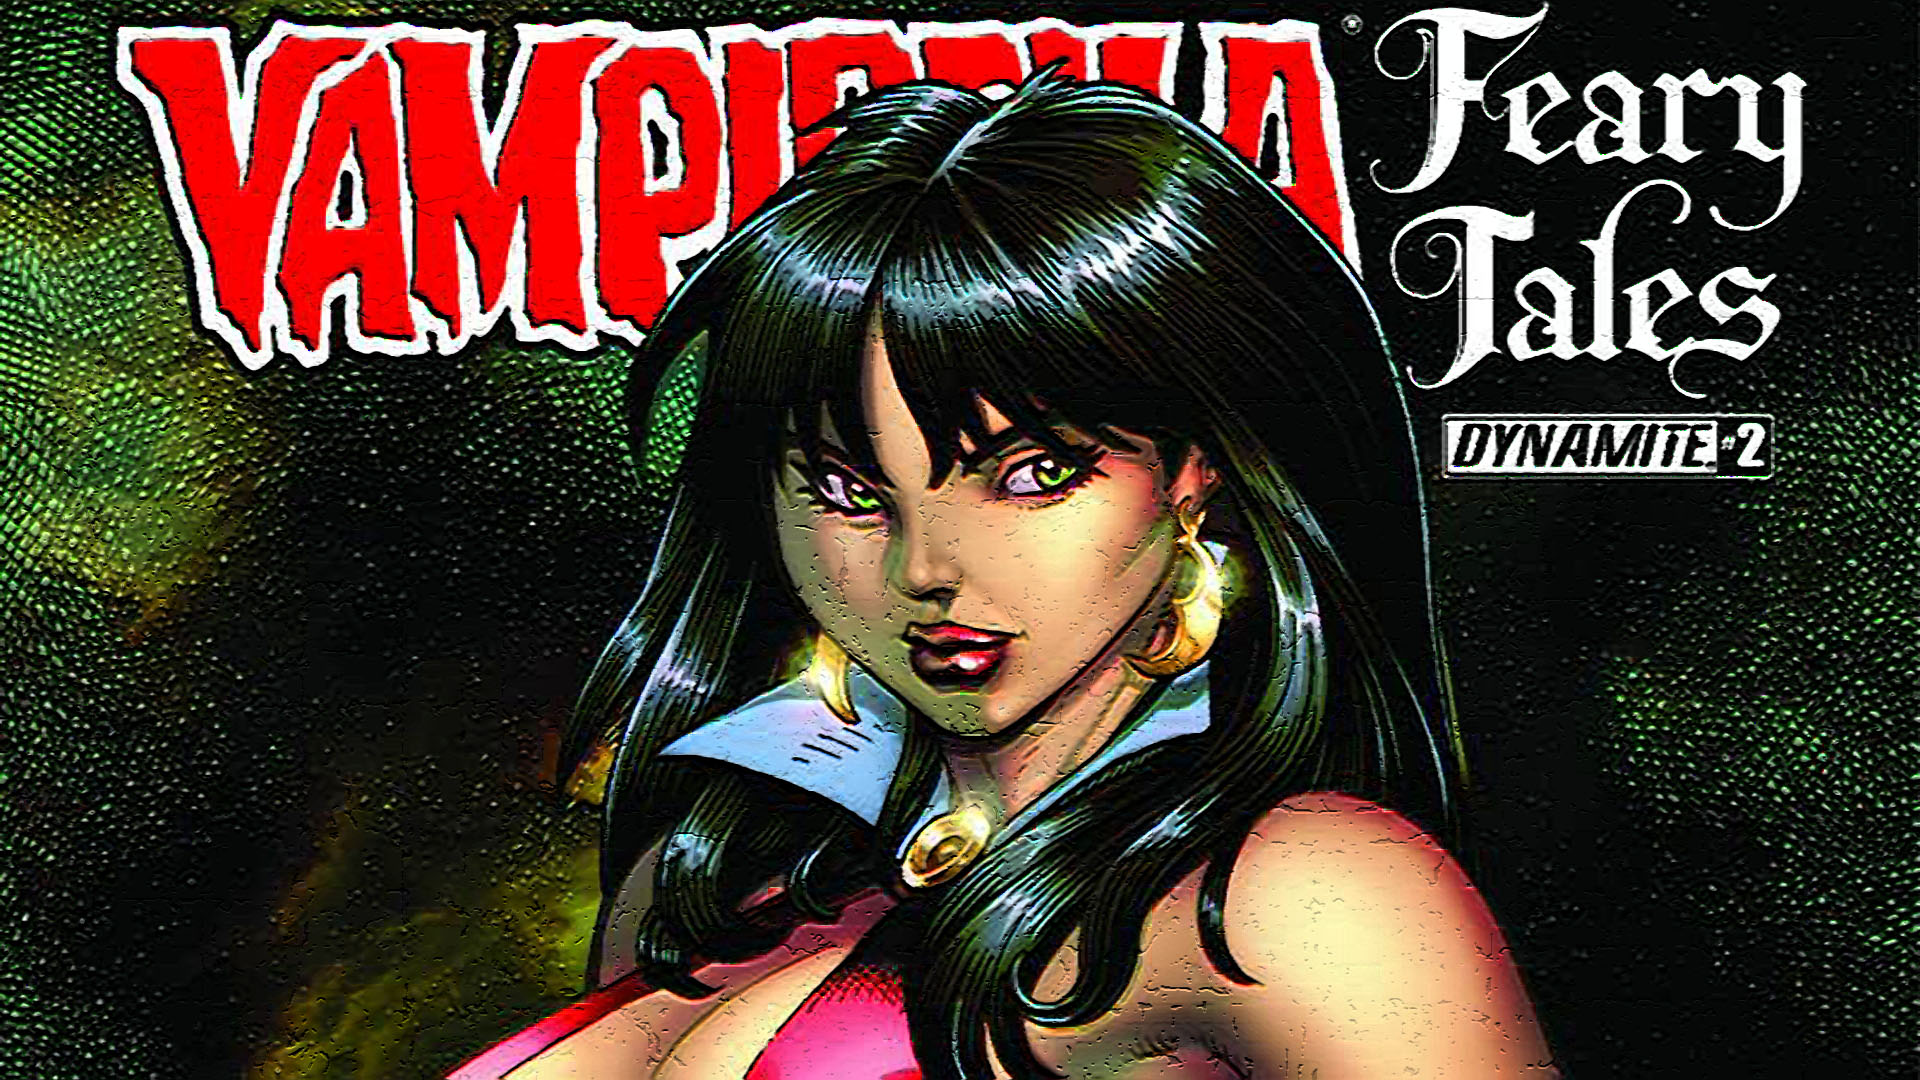 Descarga gratuita de fondo de pantalla para móvil de Historietas, Vampirella.